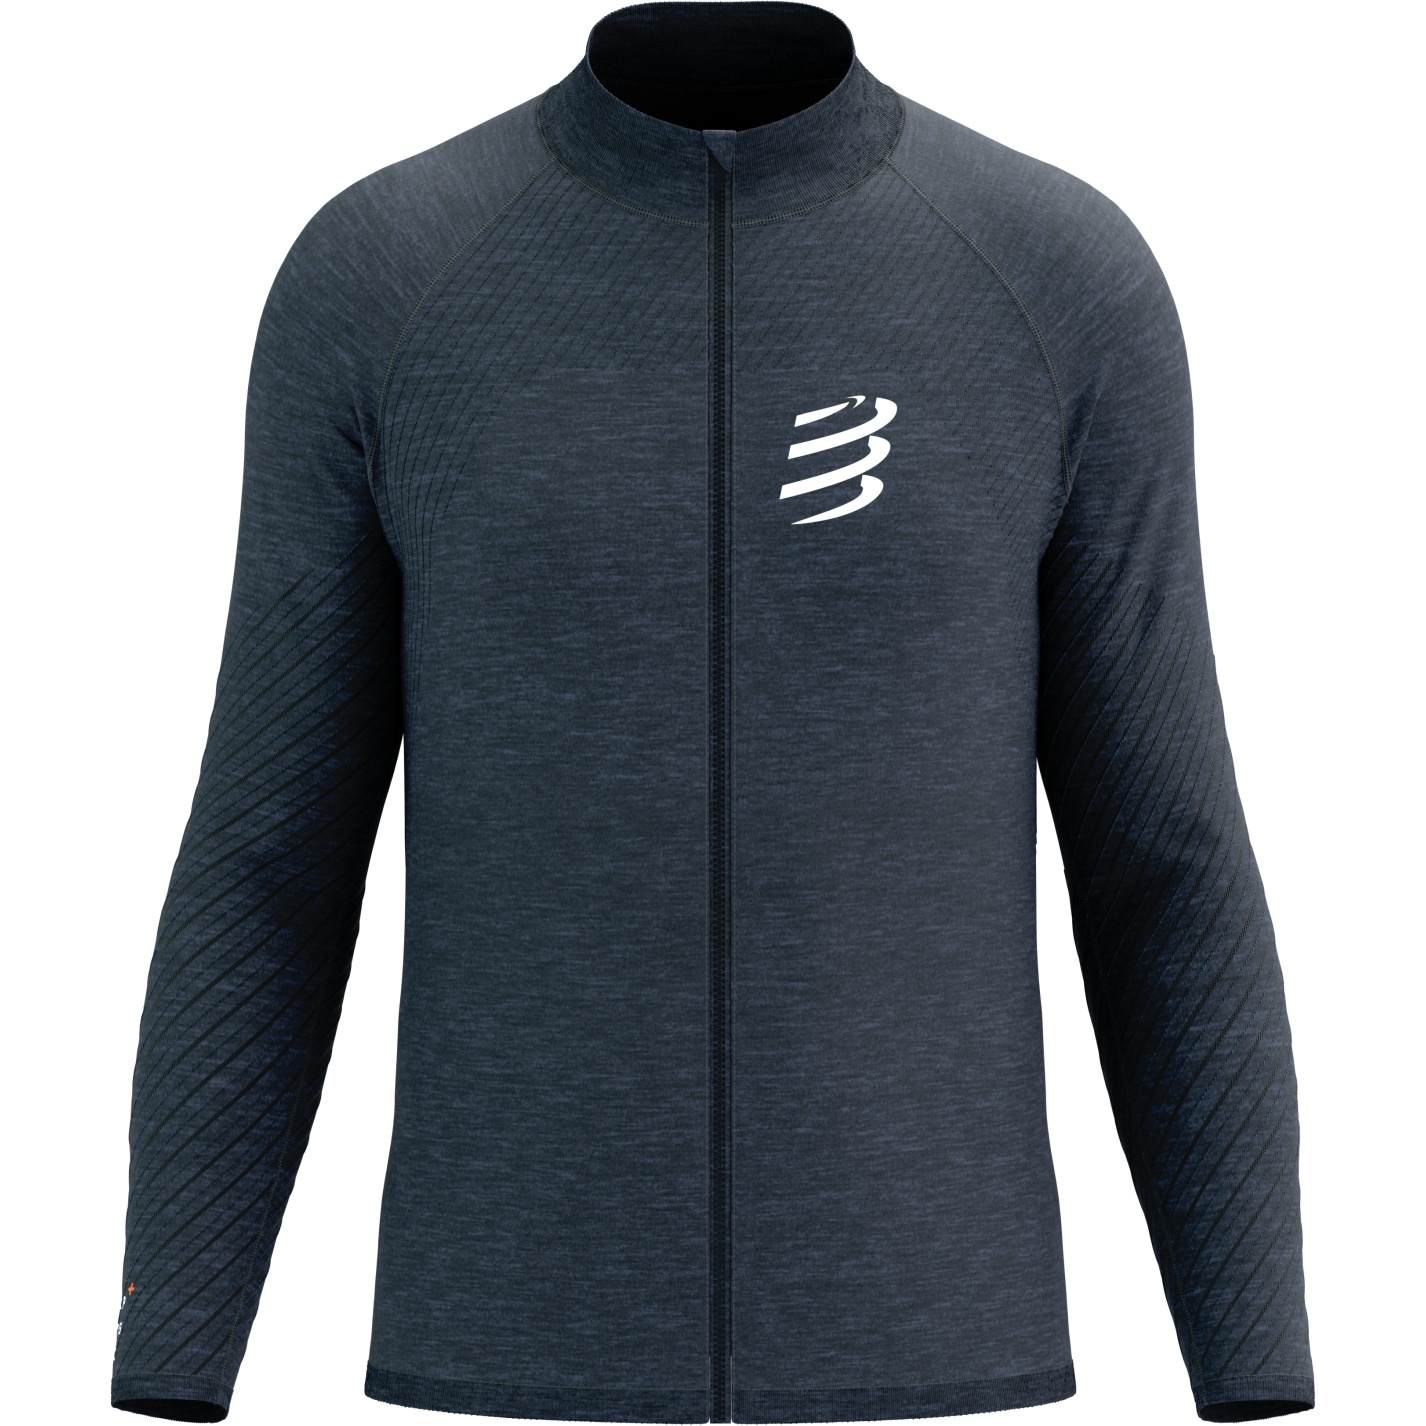 Produktbild von Compressport Seamless Zip Sweatshirt - mood indigo melange